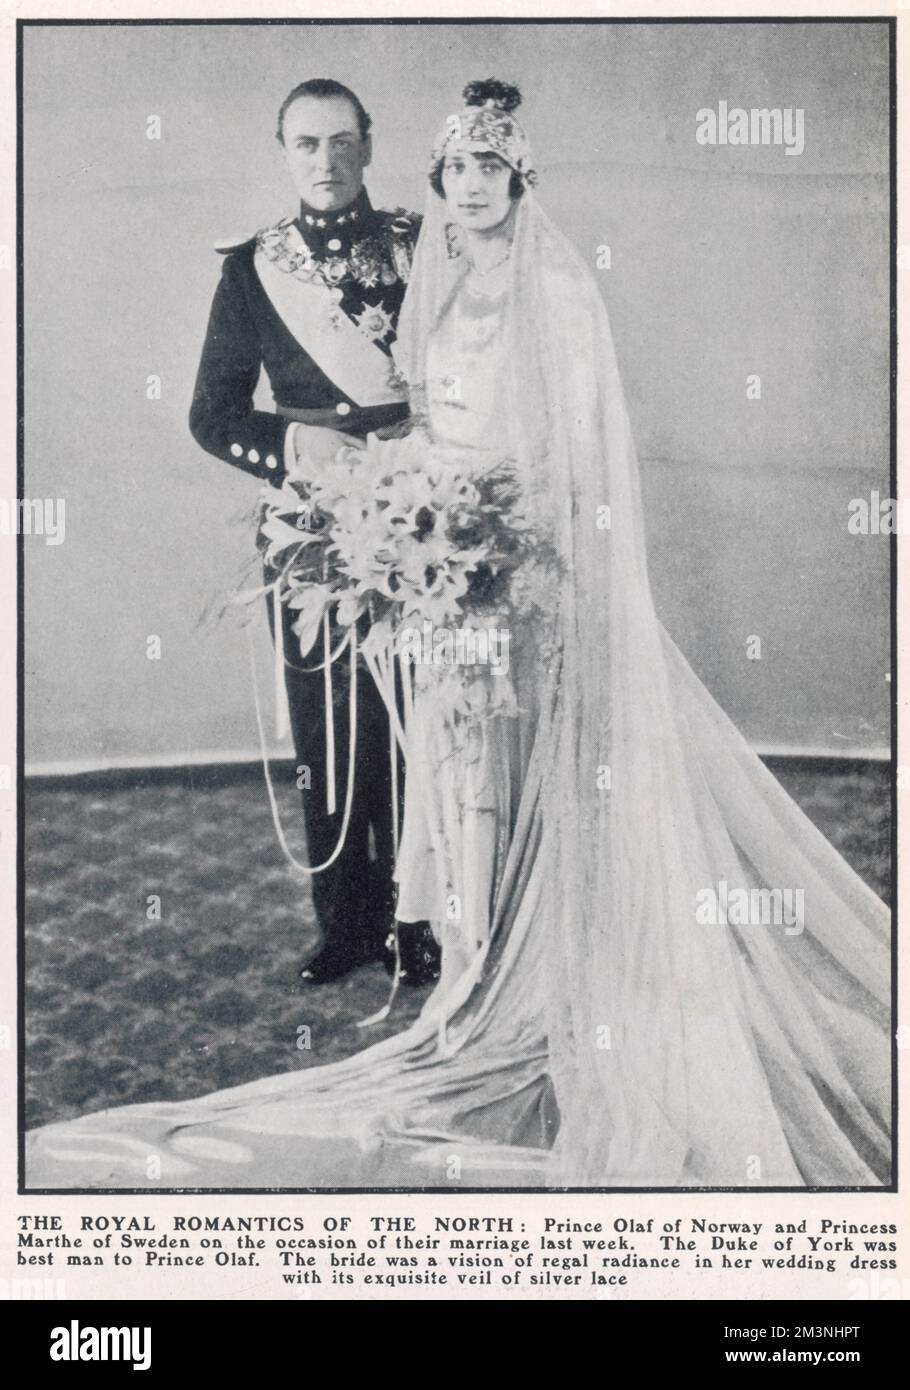 El Príncipe Olaf de Noruega, fotografiado con su novia la Princesa Marthe de Suecia con ocasión de su matrimonio en marzo de 1929. El duque de York era el mejor hombre del príncipe Olaf, su primo. La novia, según el título, era una visión de resplandor regio en su vestido de boda con su exquisito velo de encaje de plata. Fecha: 1929 Foto de stock